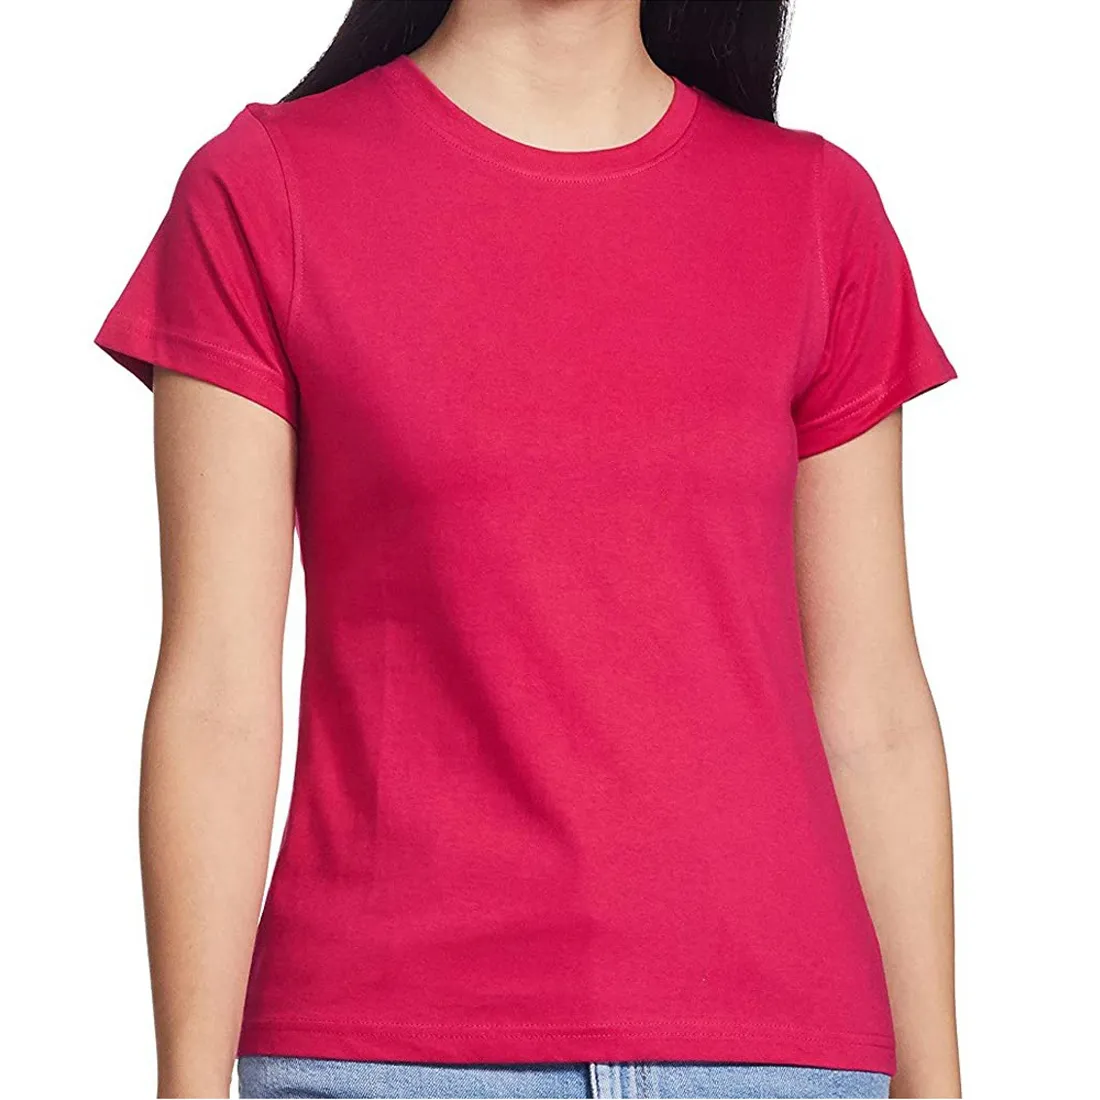 2024 महिलाओं की ग्रीष्मकालीन पोशाक छोटी आस्तीन वाली टी शर्ट 100% सूती ग्रीष्मकालीन परिधान महिलाओं की टी शर्ट नई शैली फैशनेबल महिलाओं की टी शर्ट